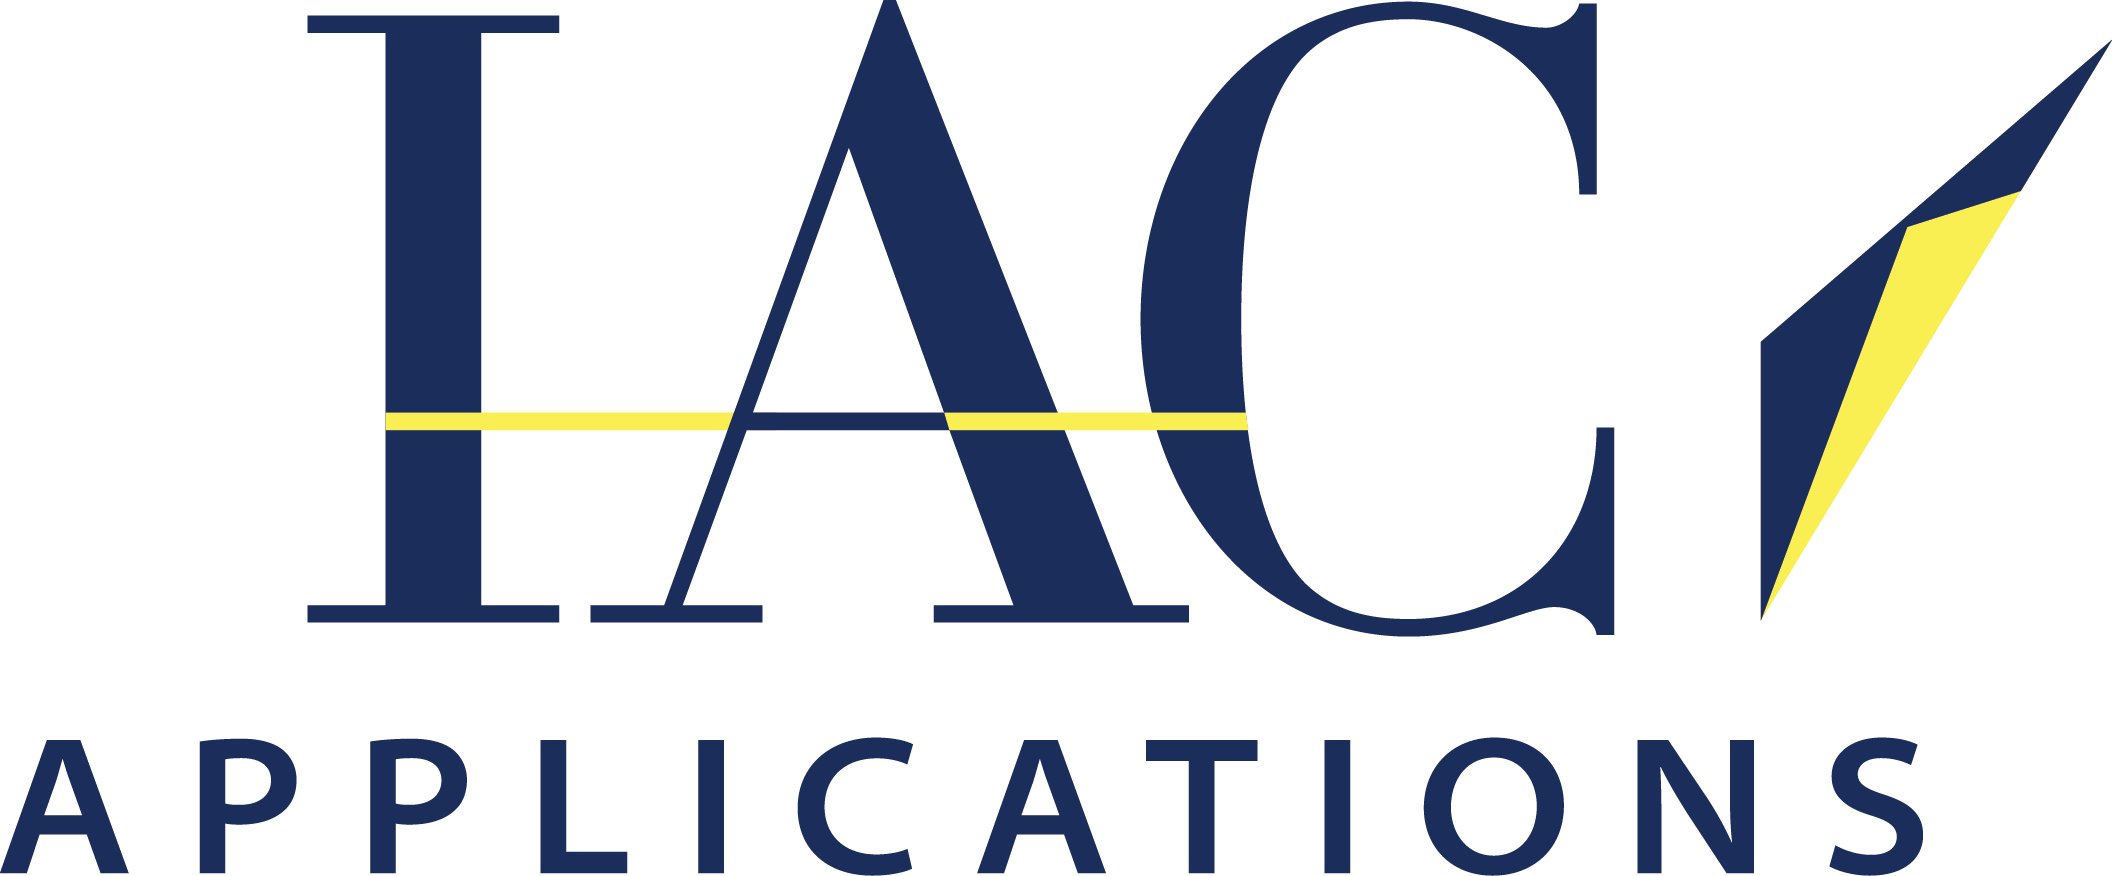 IAC Applications